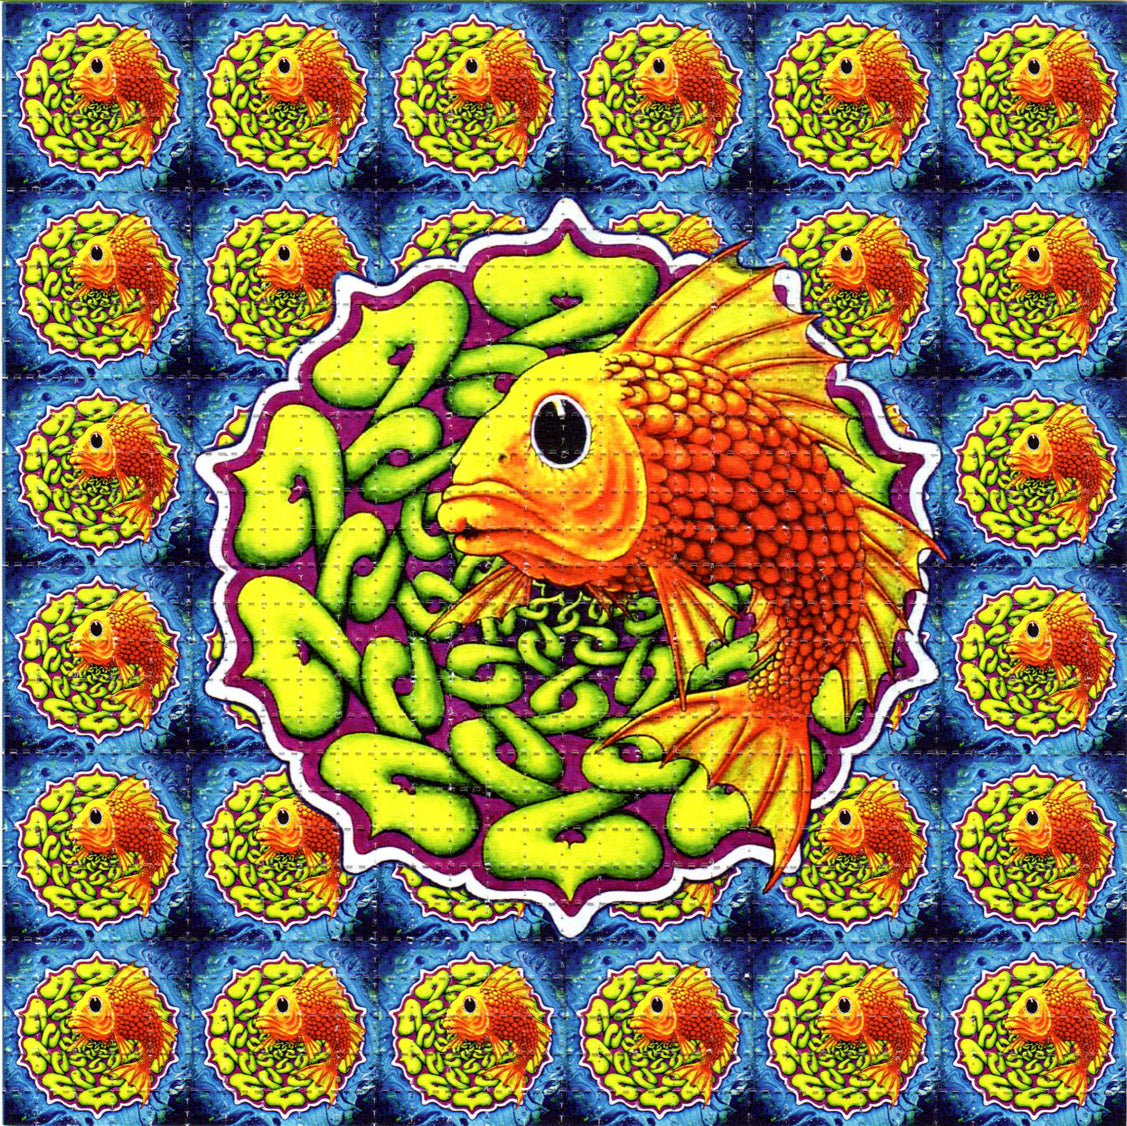 Gold Phish LSD blotter art print